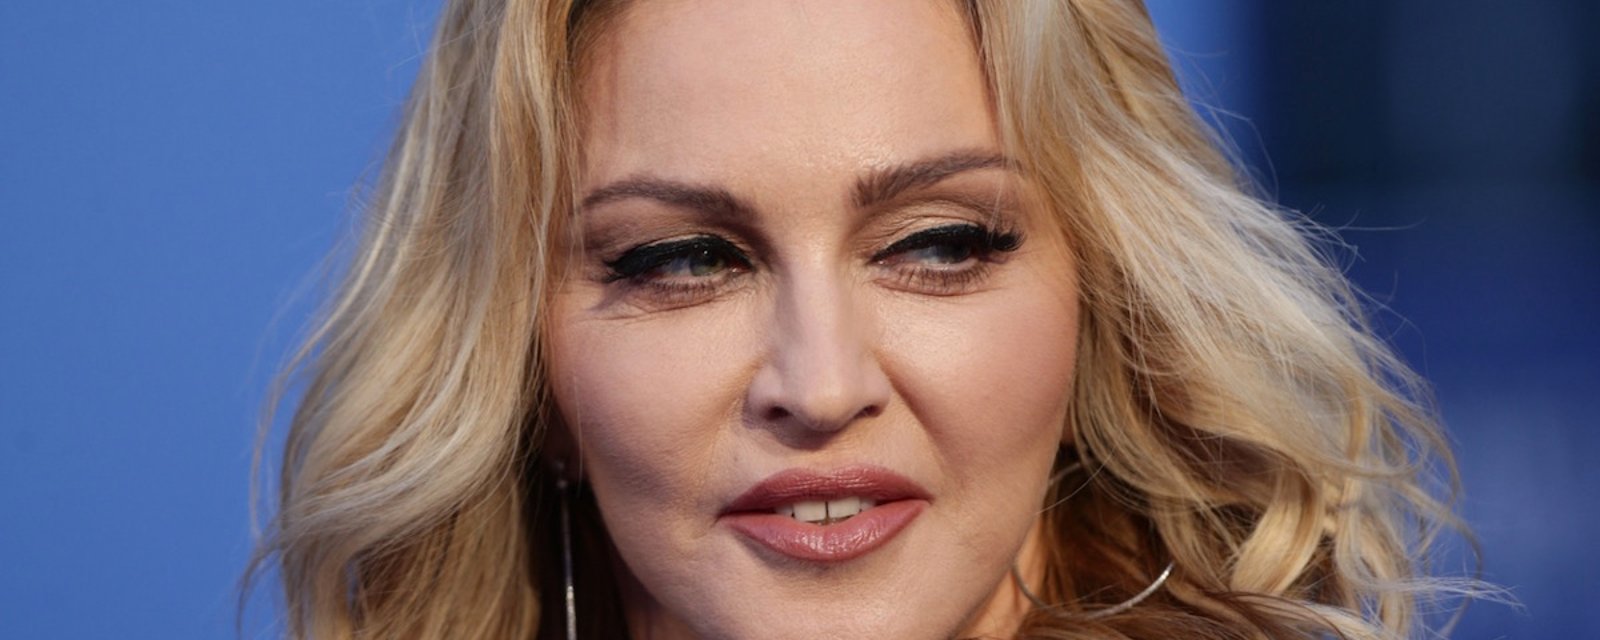 Madonna a-t-elle enlevé les filles d'un homme? 